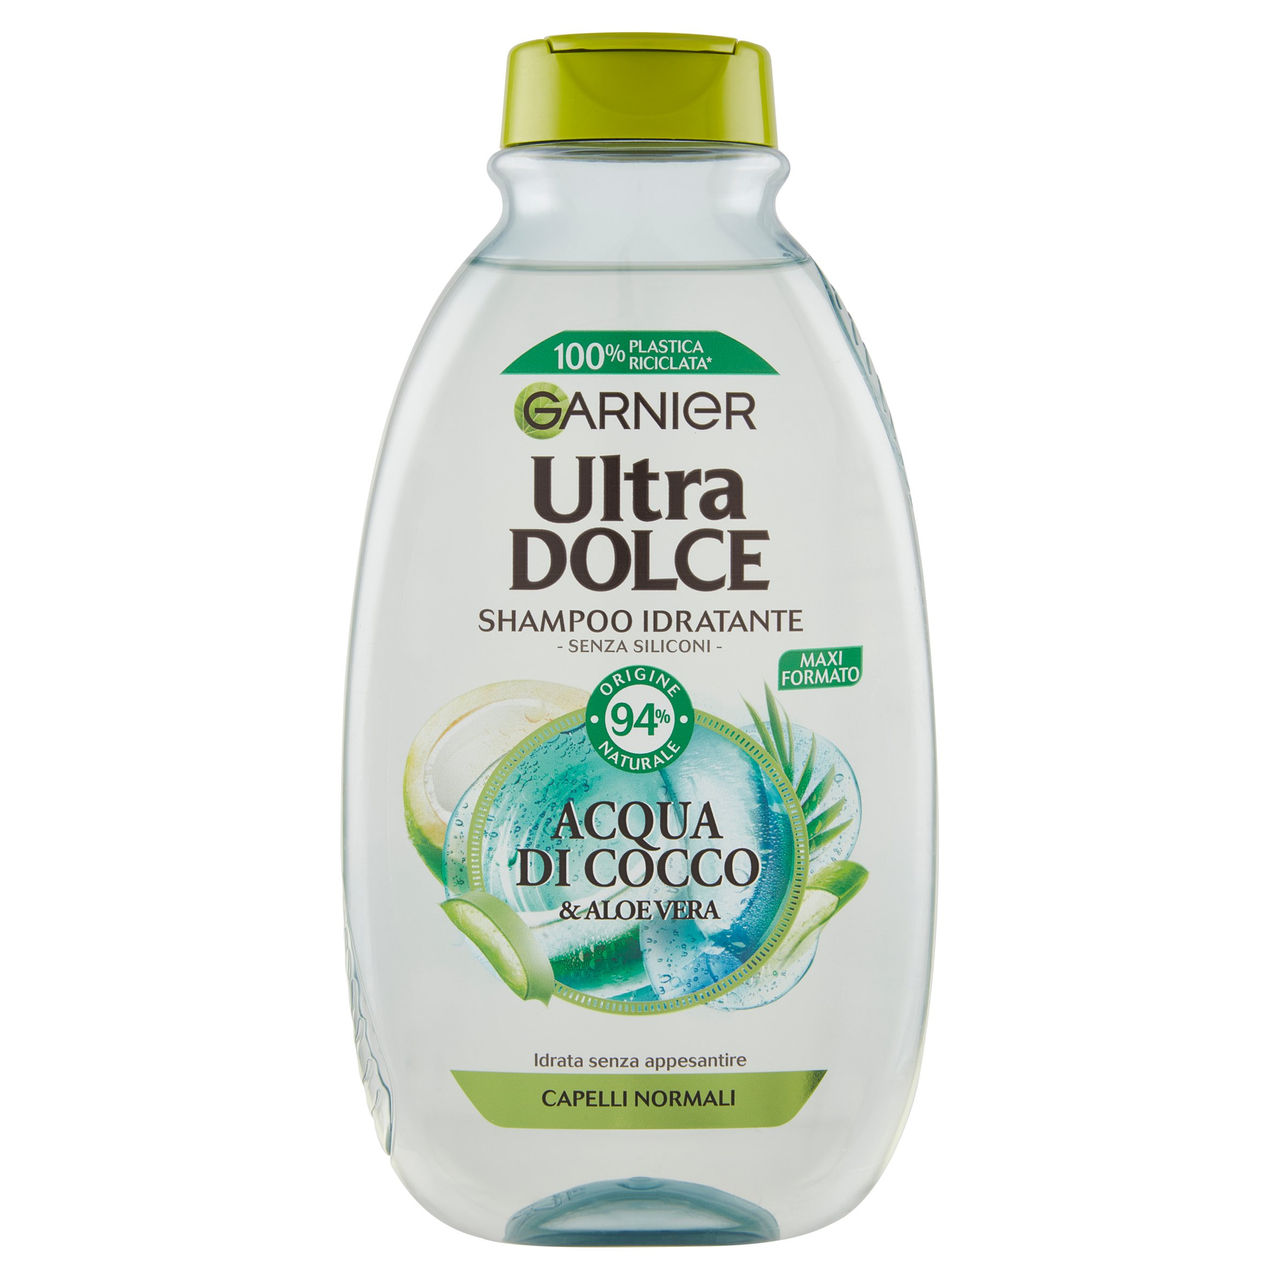 Garnier Ultra Dolce Shampoo Acqua di Cocco e Aloe